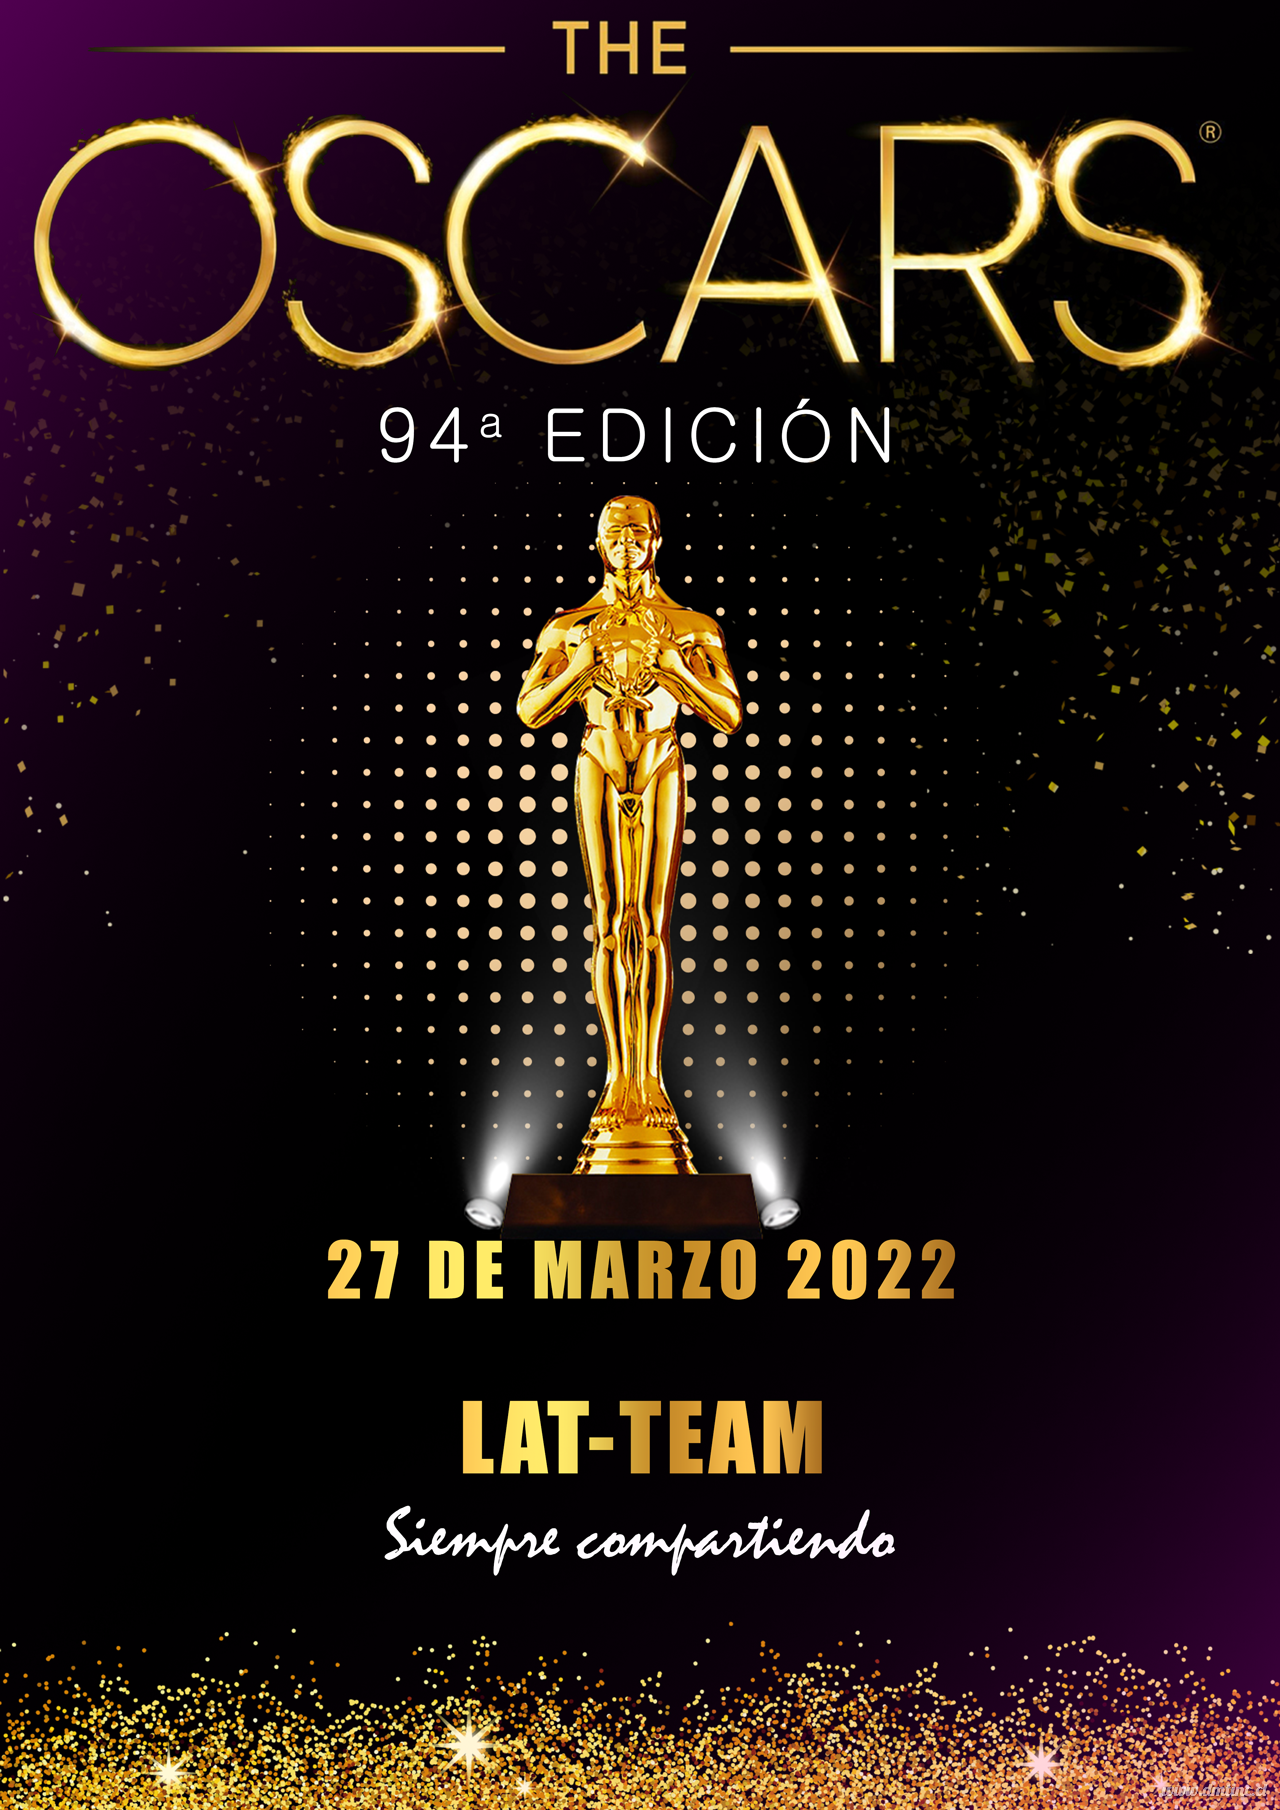 Oscars-20228e50d0d6feb2c4a1.png